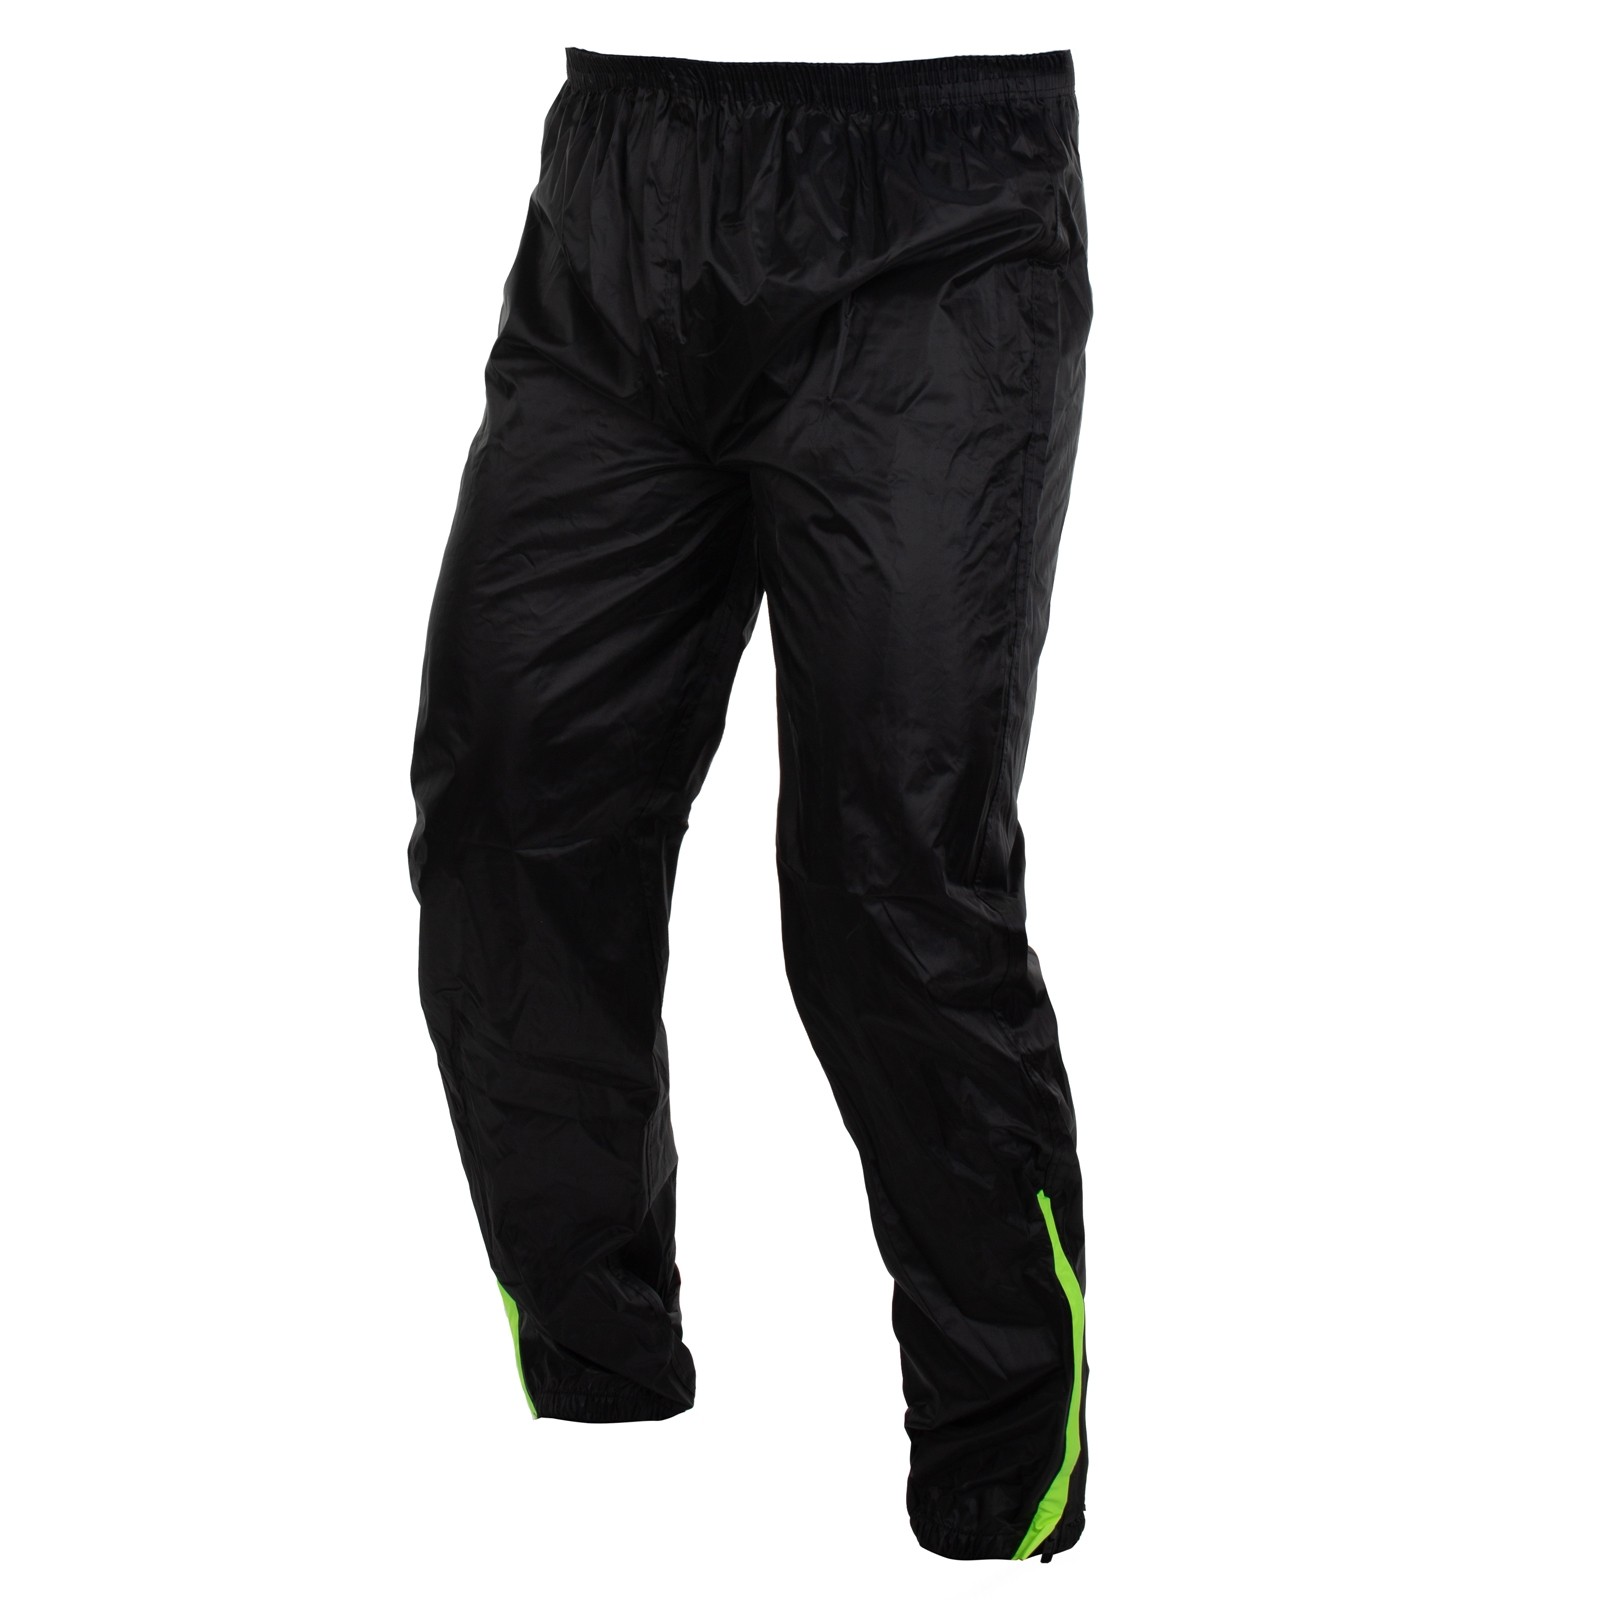 Abbigliamento Moto e Accessori - Tuta Impermeabile Giacca Pantaloni  Combinazione Antipioggia alta Visibilità